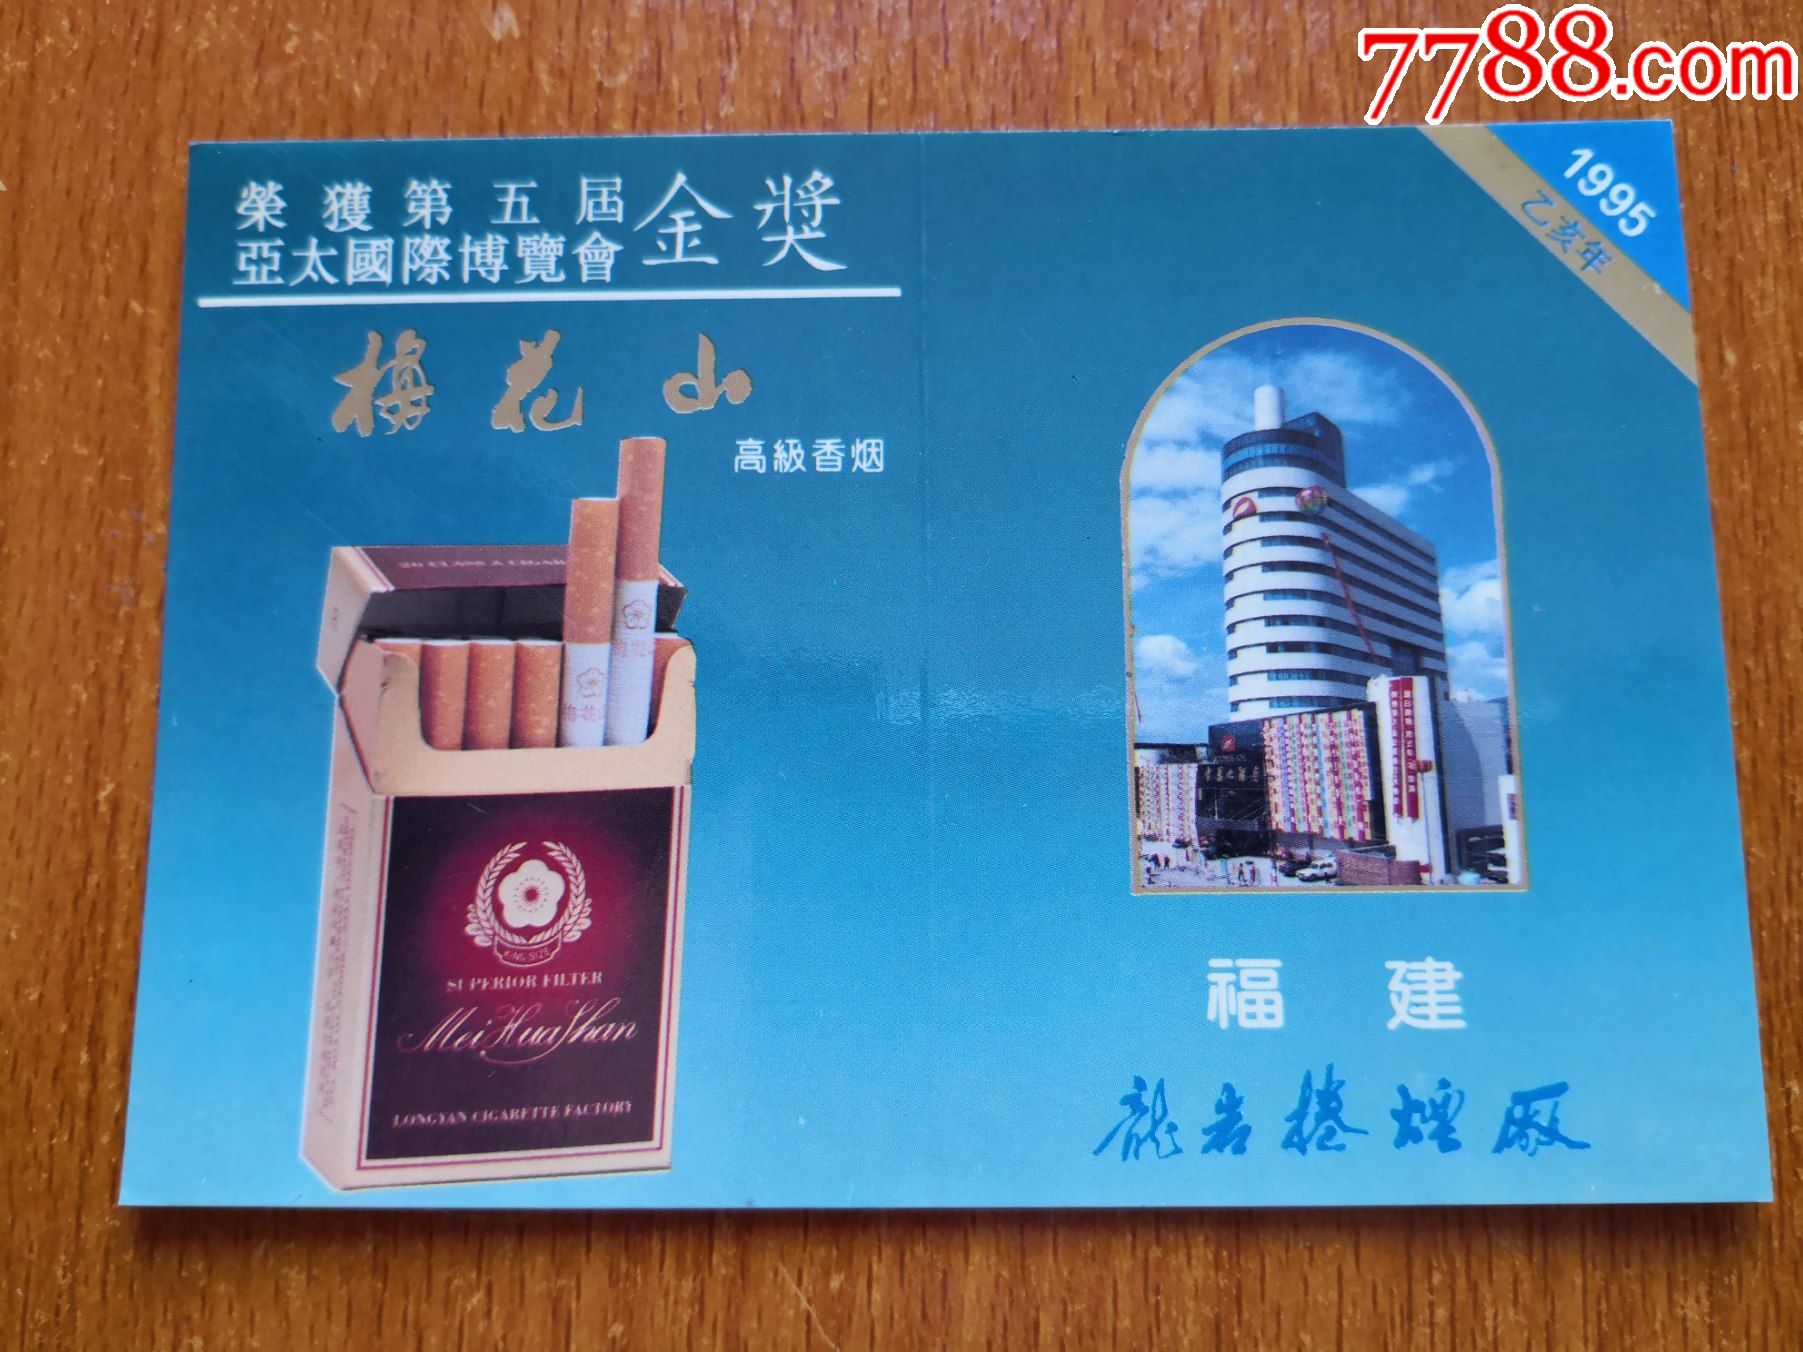 香烟广告年历卡【梅花山】1995年